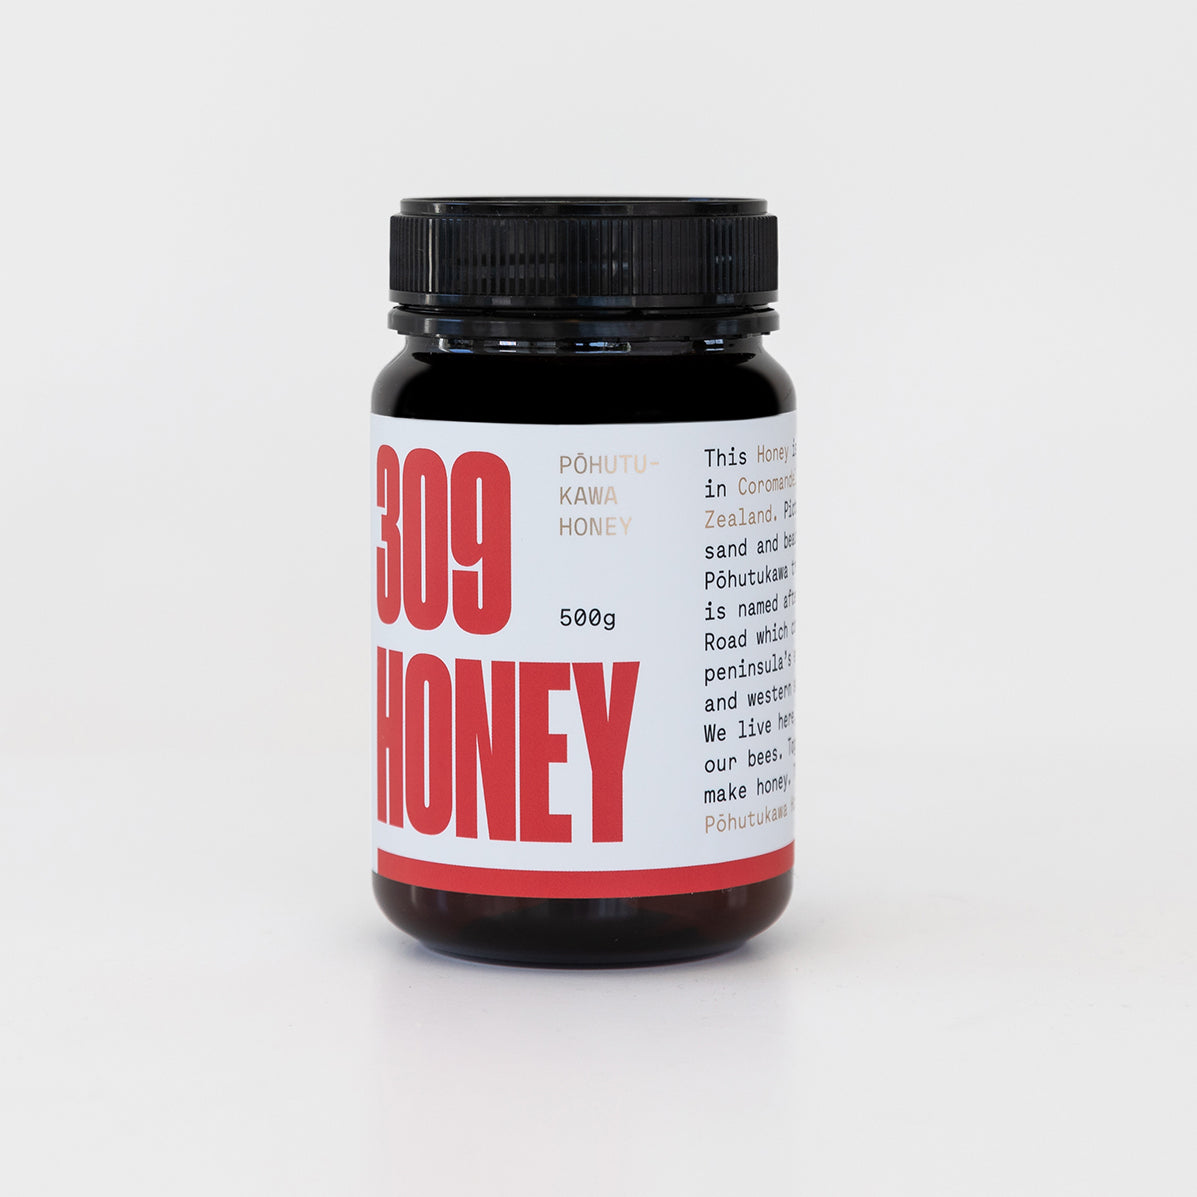 309 Pōhutukawa Honey